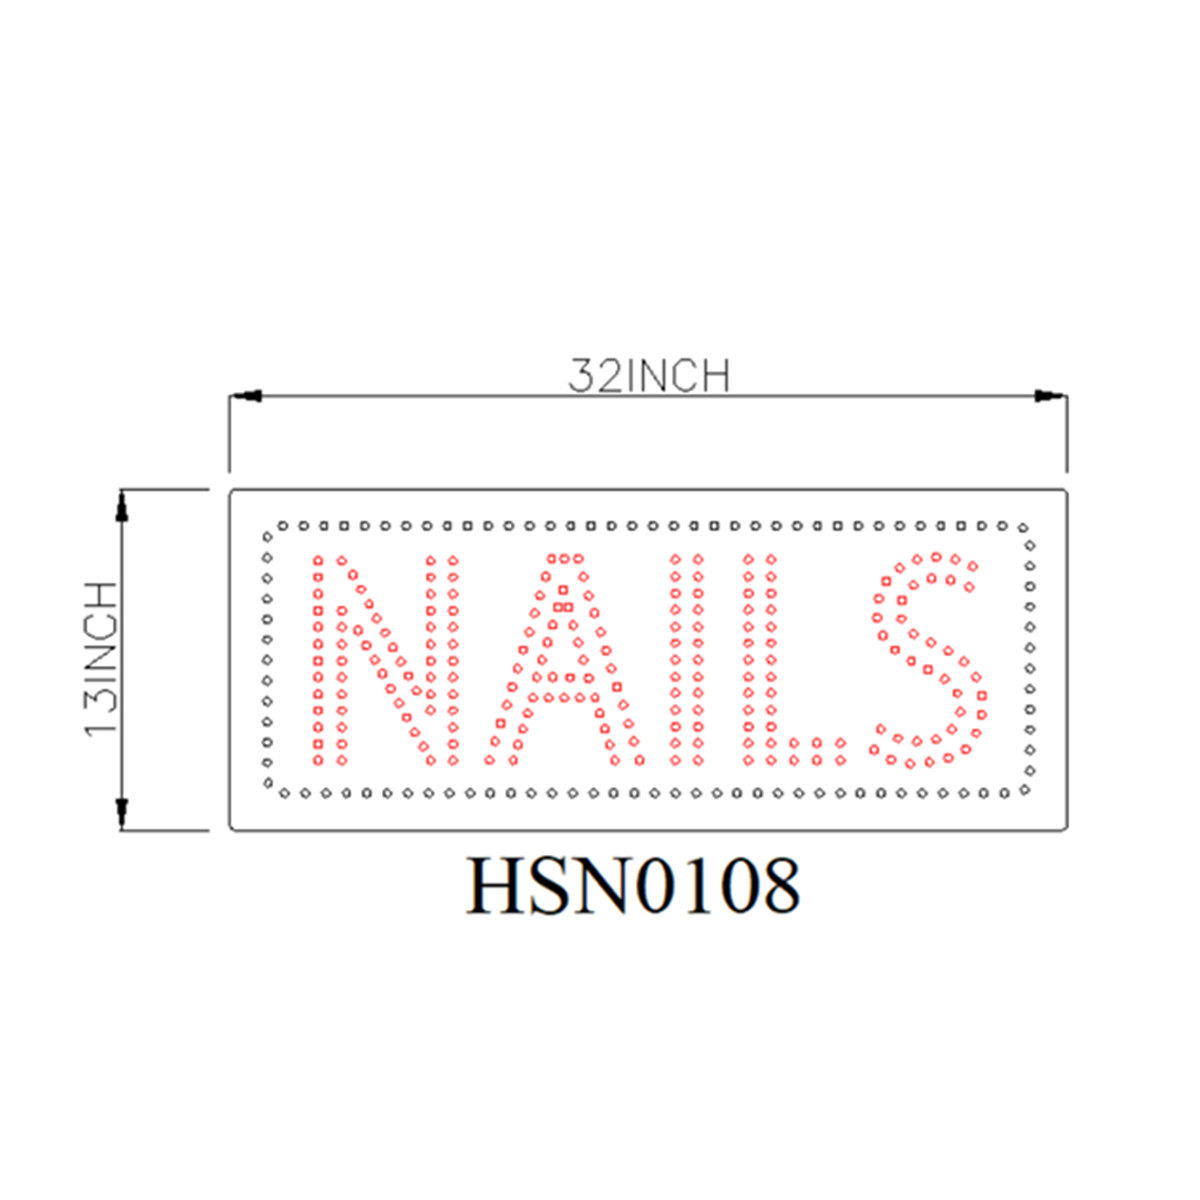 nails large led sign